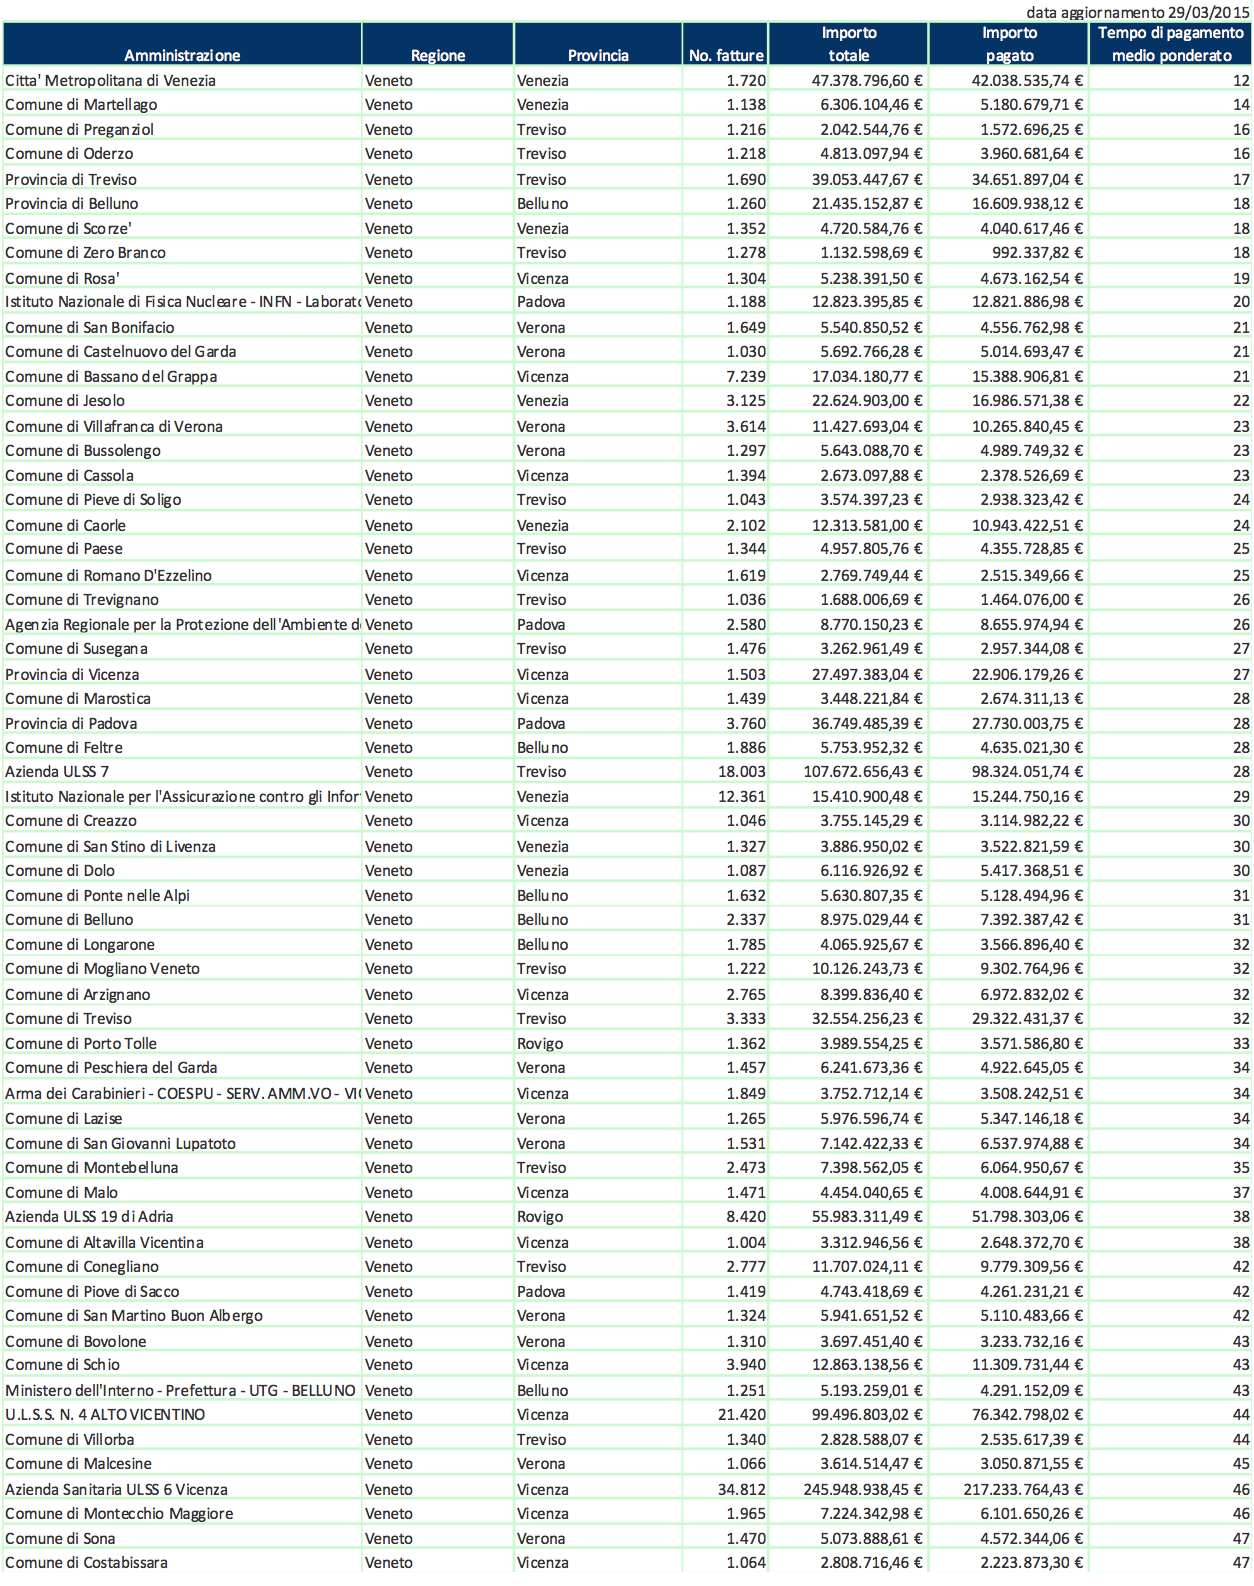 Tabella: classifica degli enti della pubblica amministrazione virtuosi nei pagamenti (fonte Confcommercio Veneto su dati Mef)